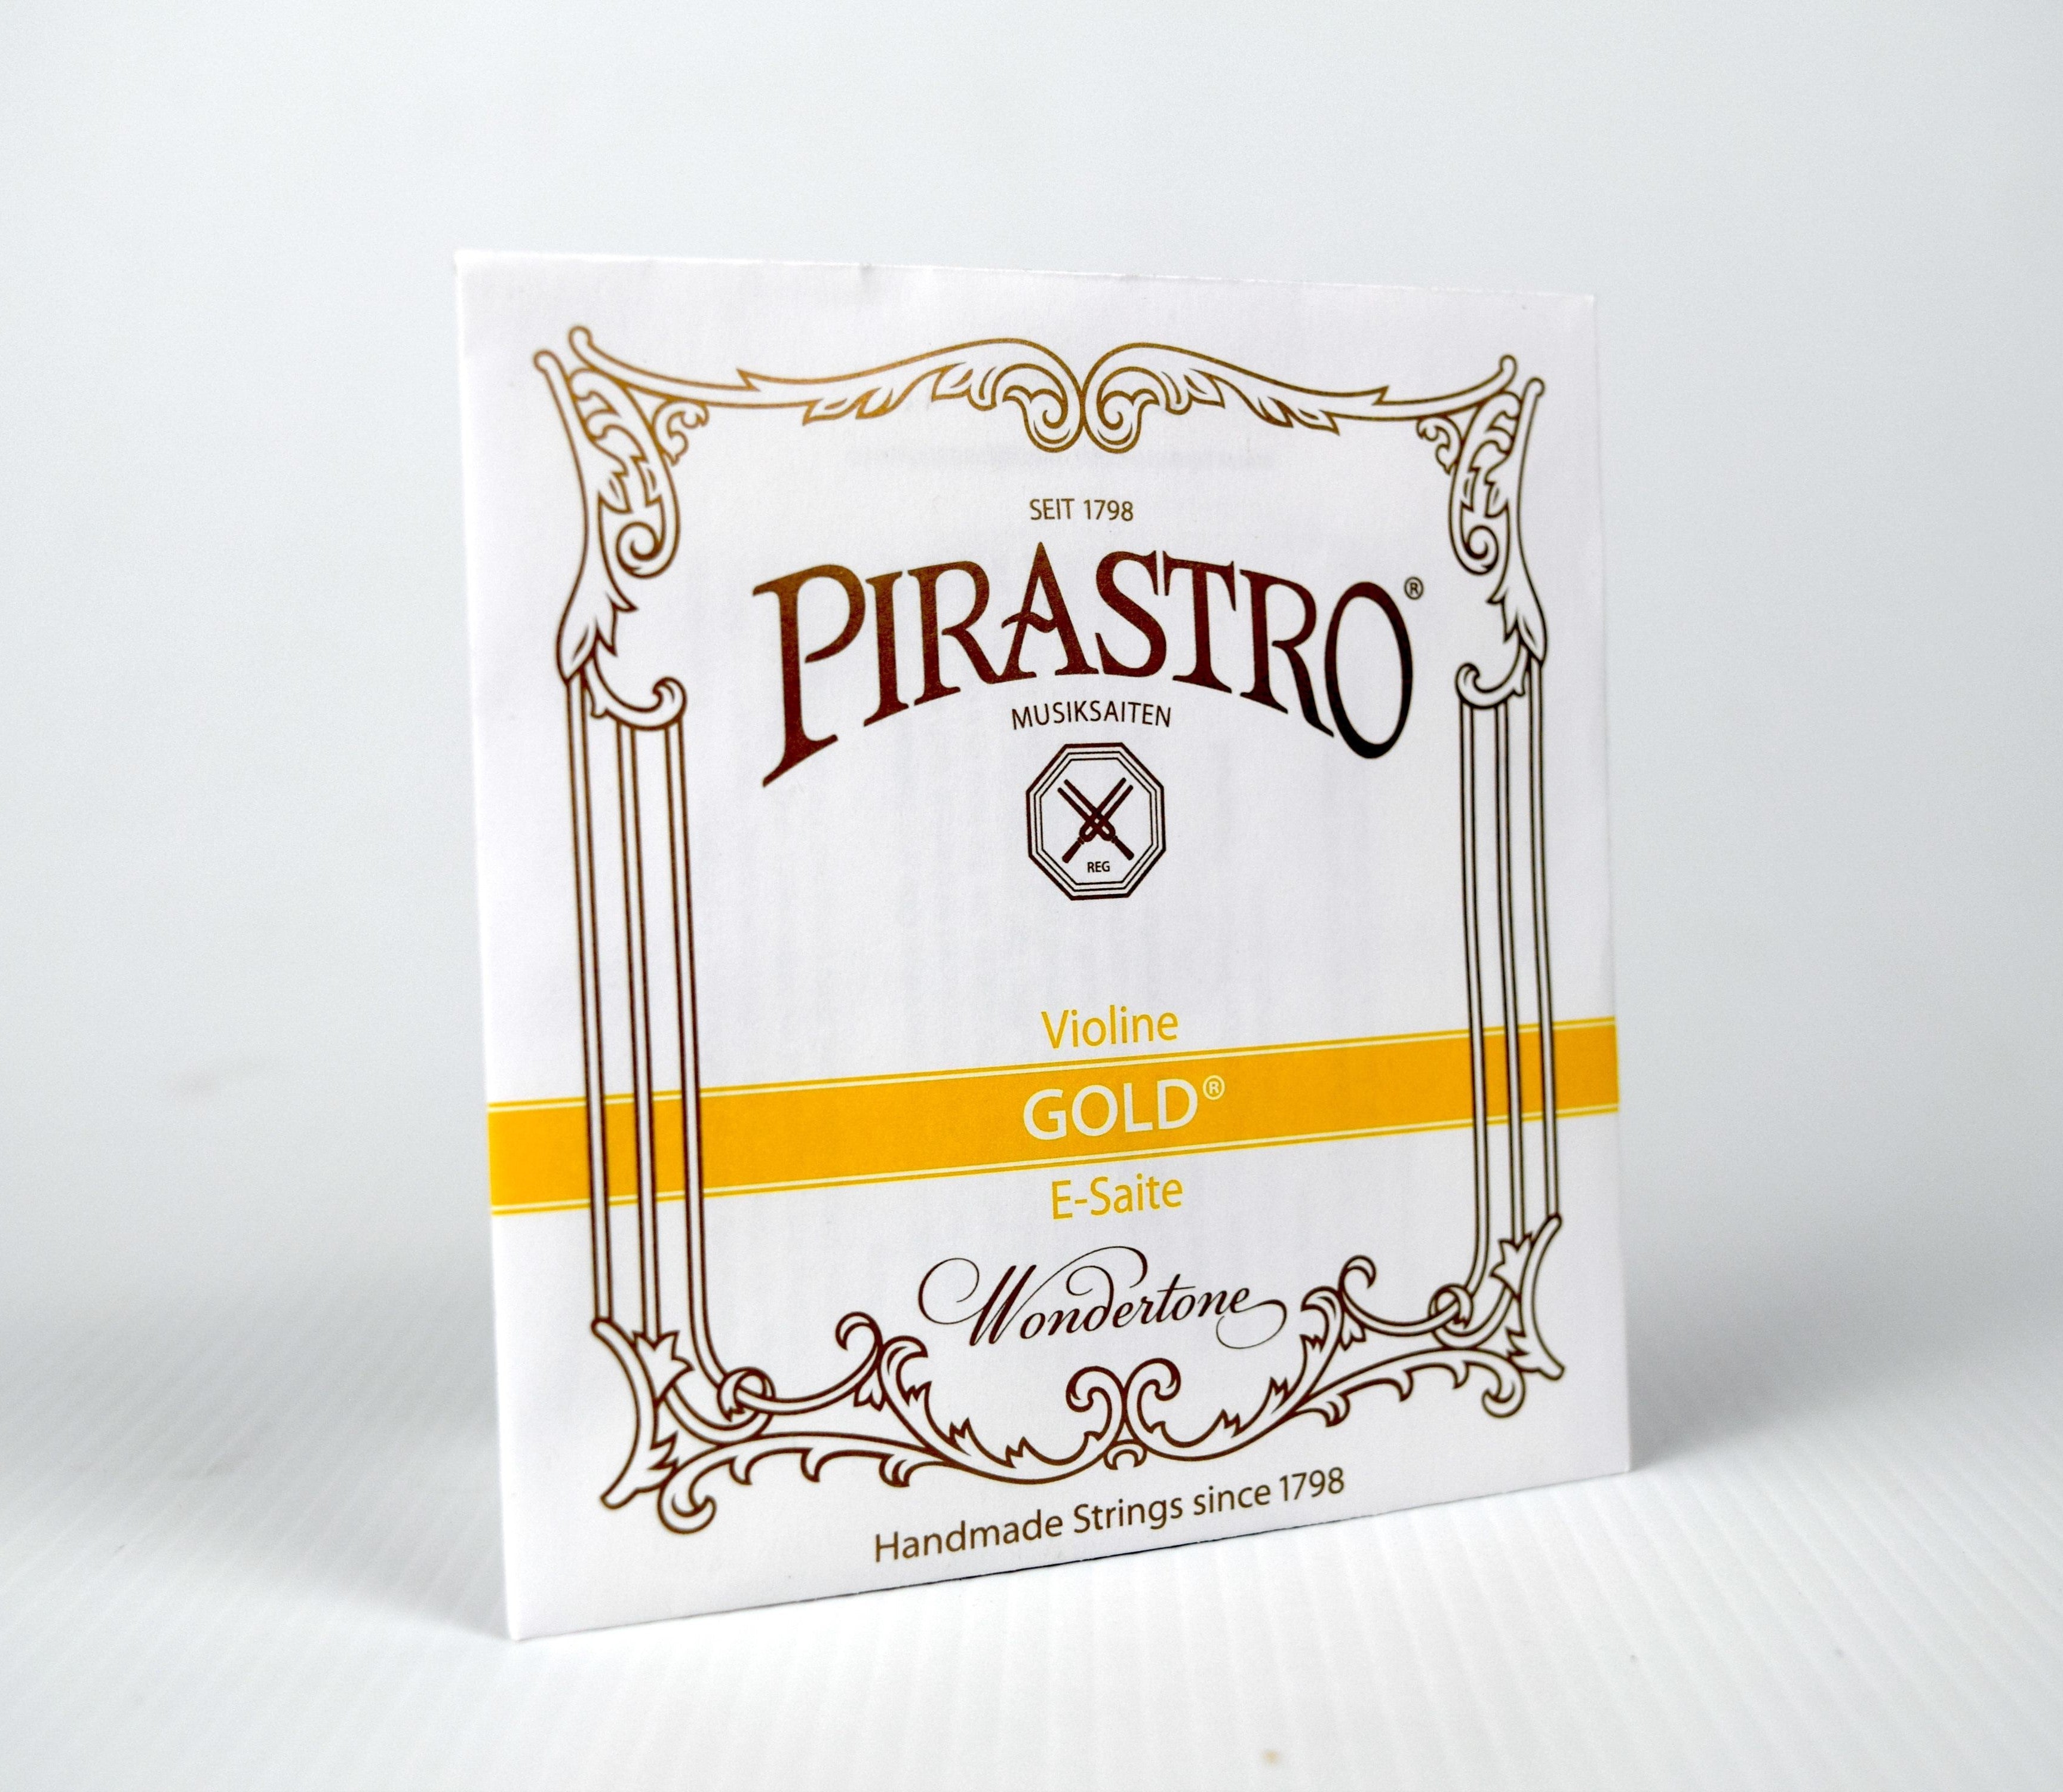 Pirastro Gold Label Strings